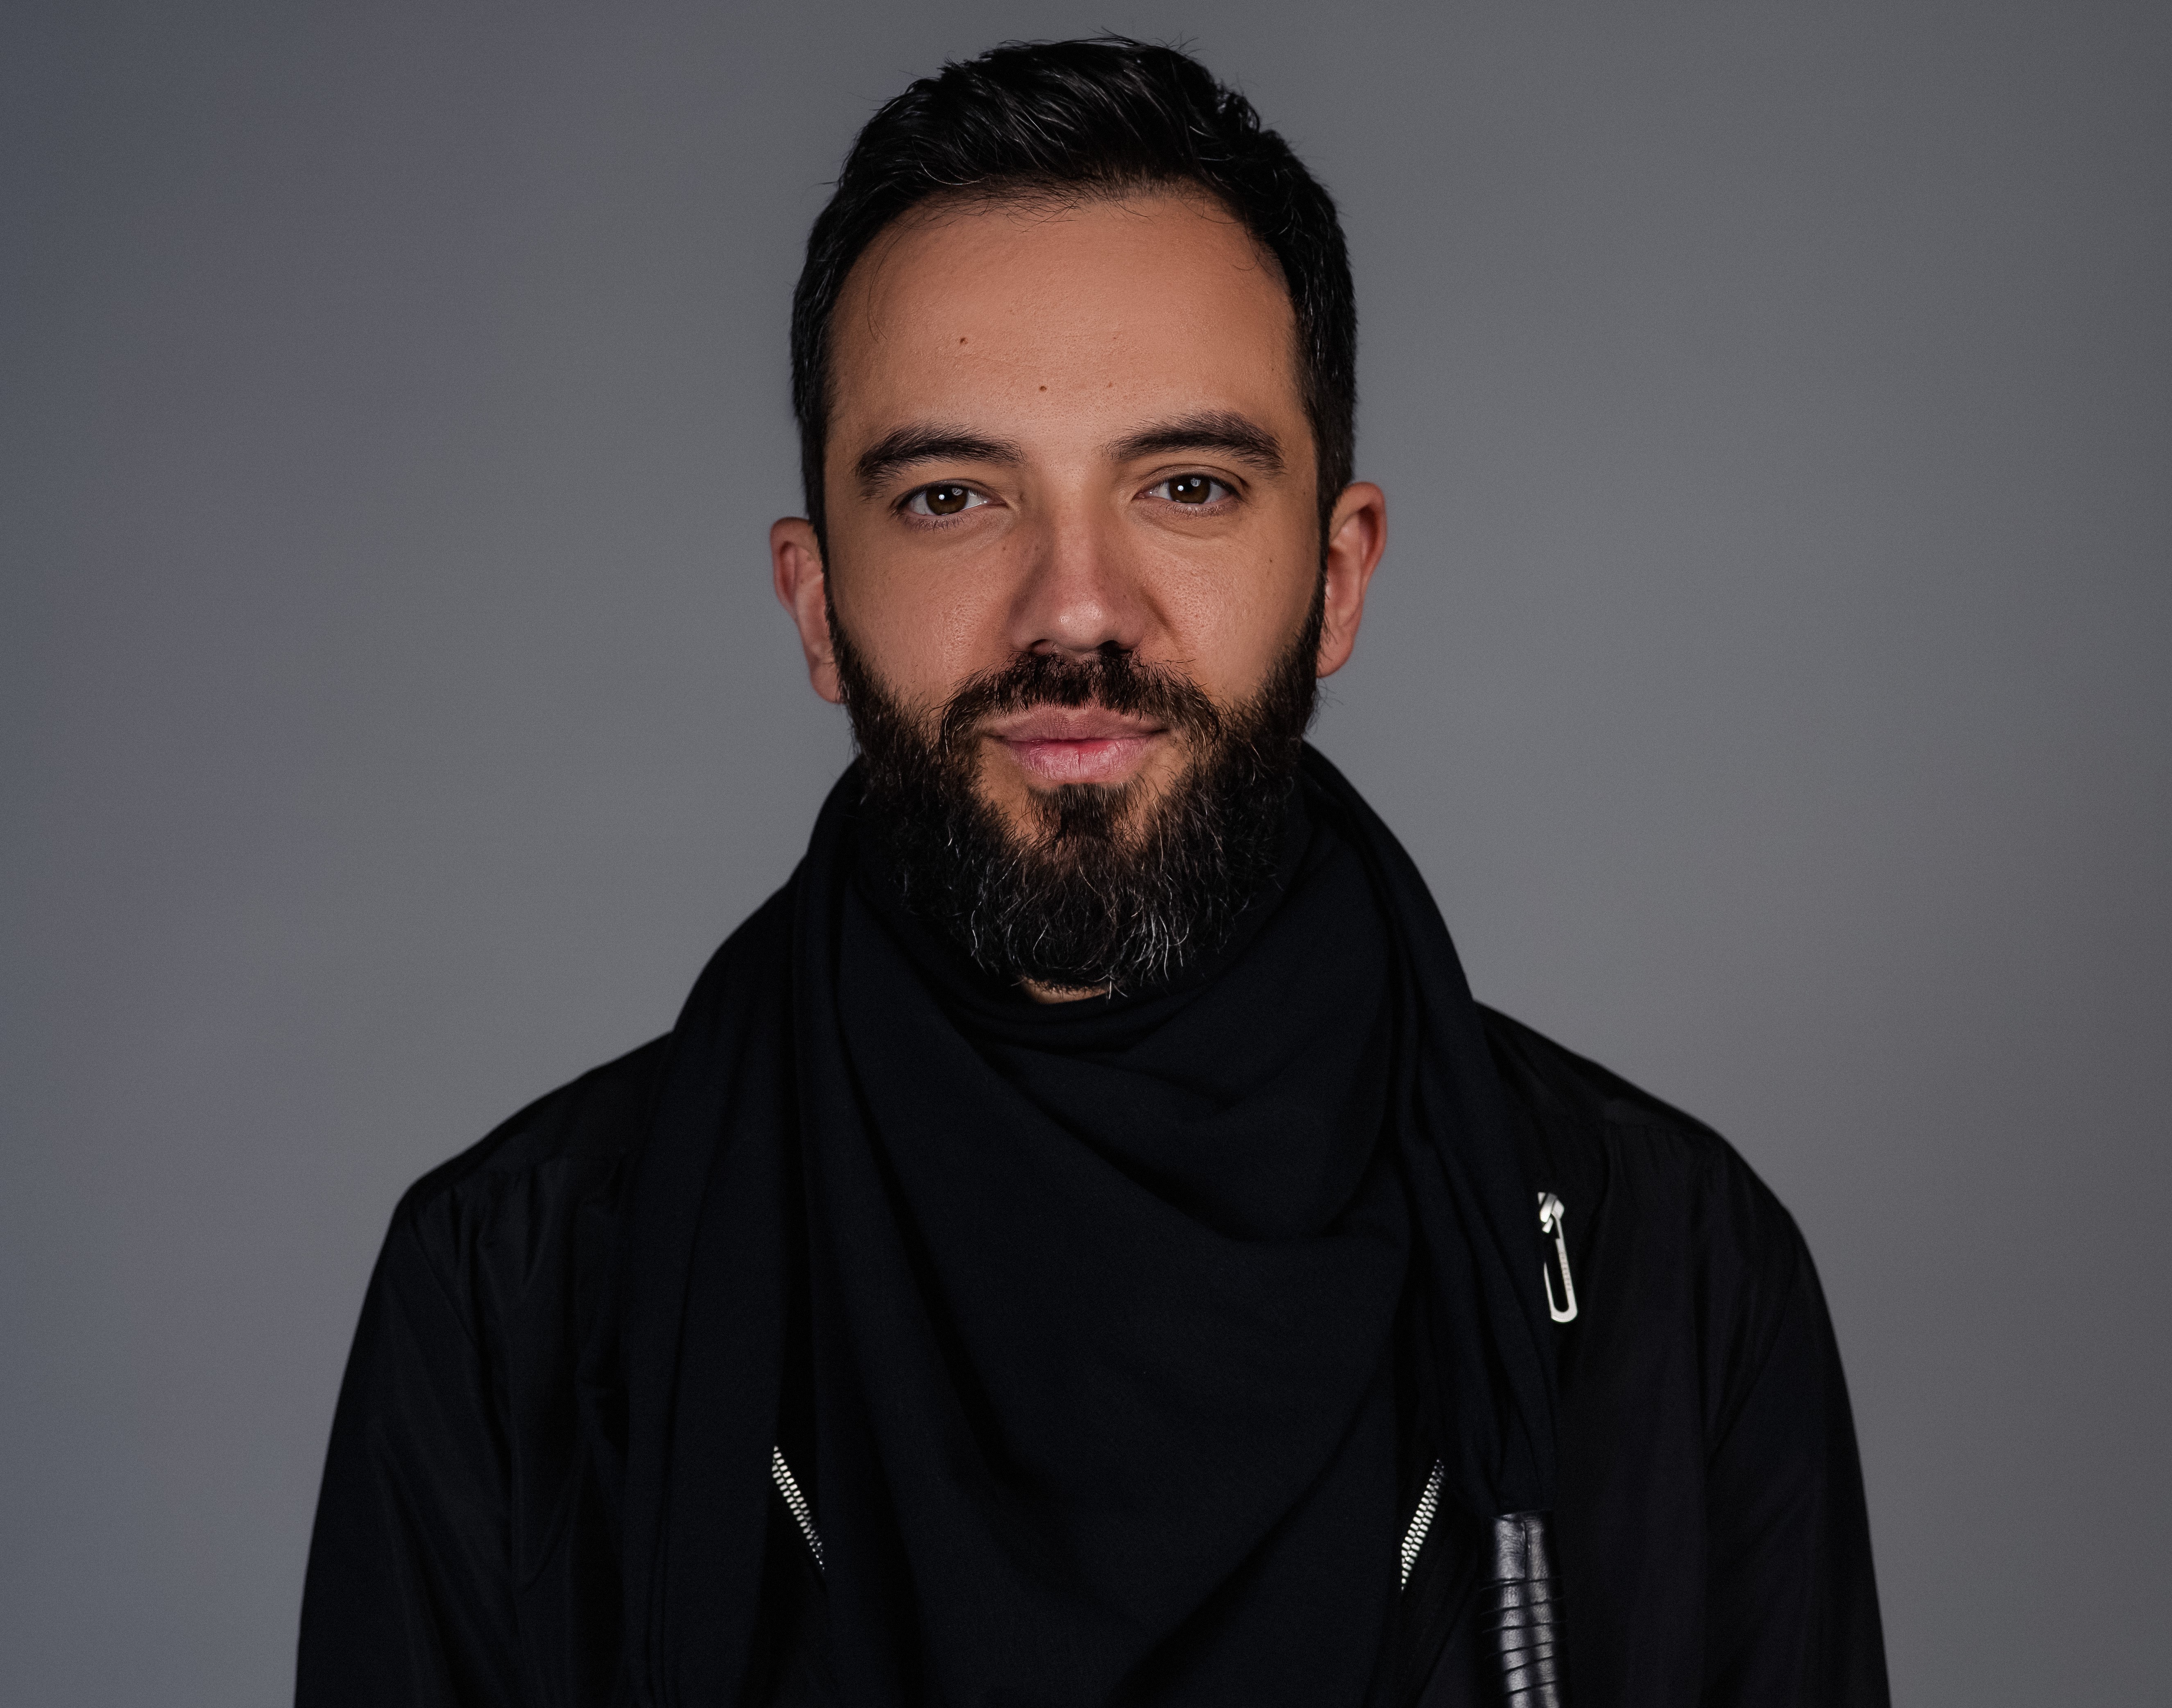 Retailerul român de modă Vagabond Studio/ Made by Society îl numeşte la conducerea operaţiunilor pe Răzvan Petrescu, fost director comercial al companiei